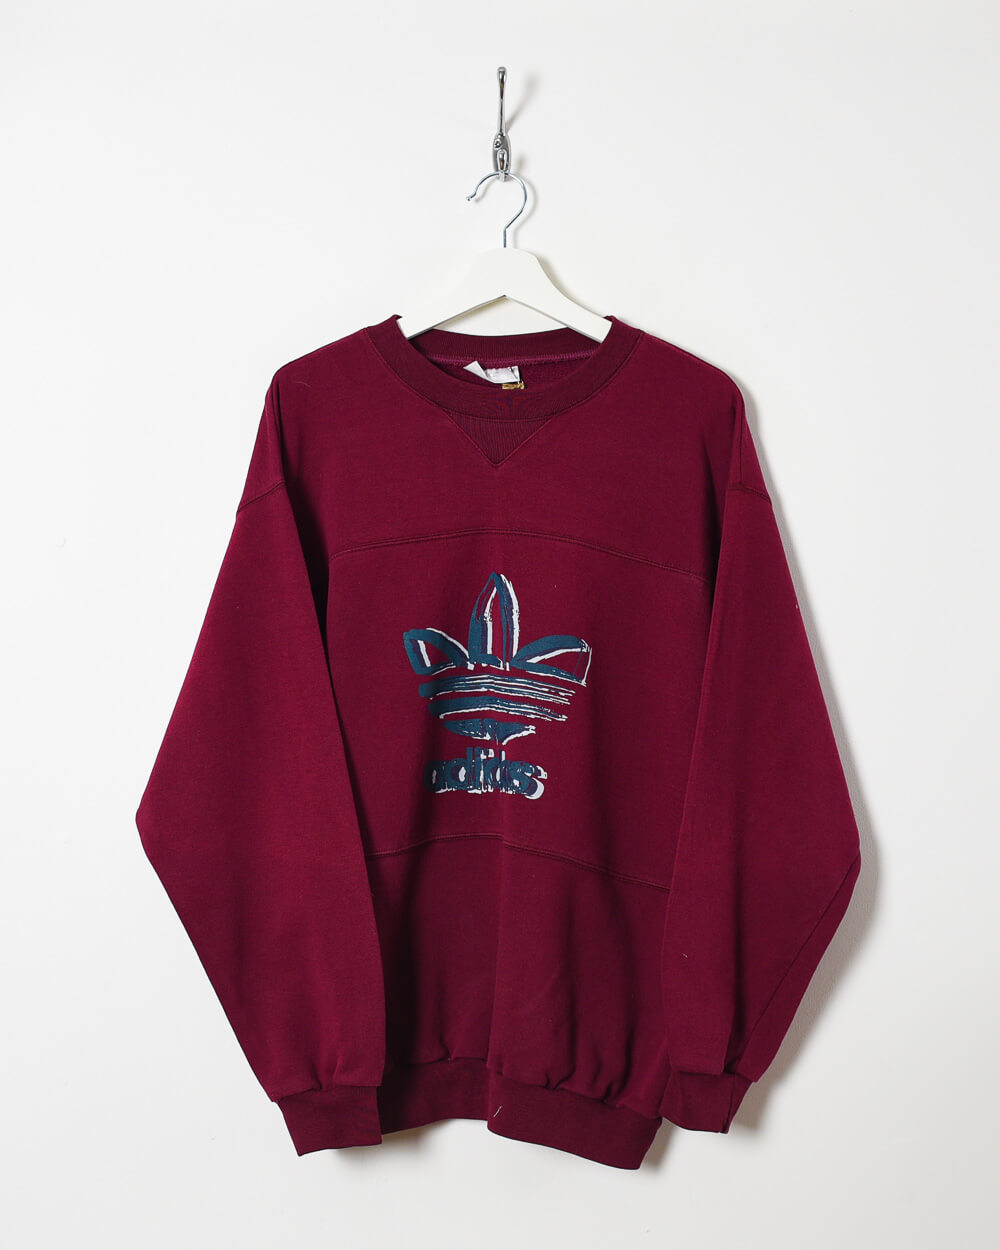 Maroon Adidas Sweatshirt - Medium